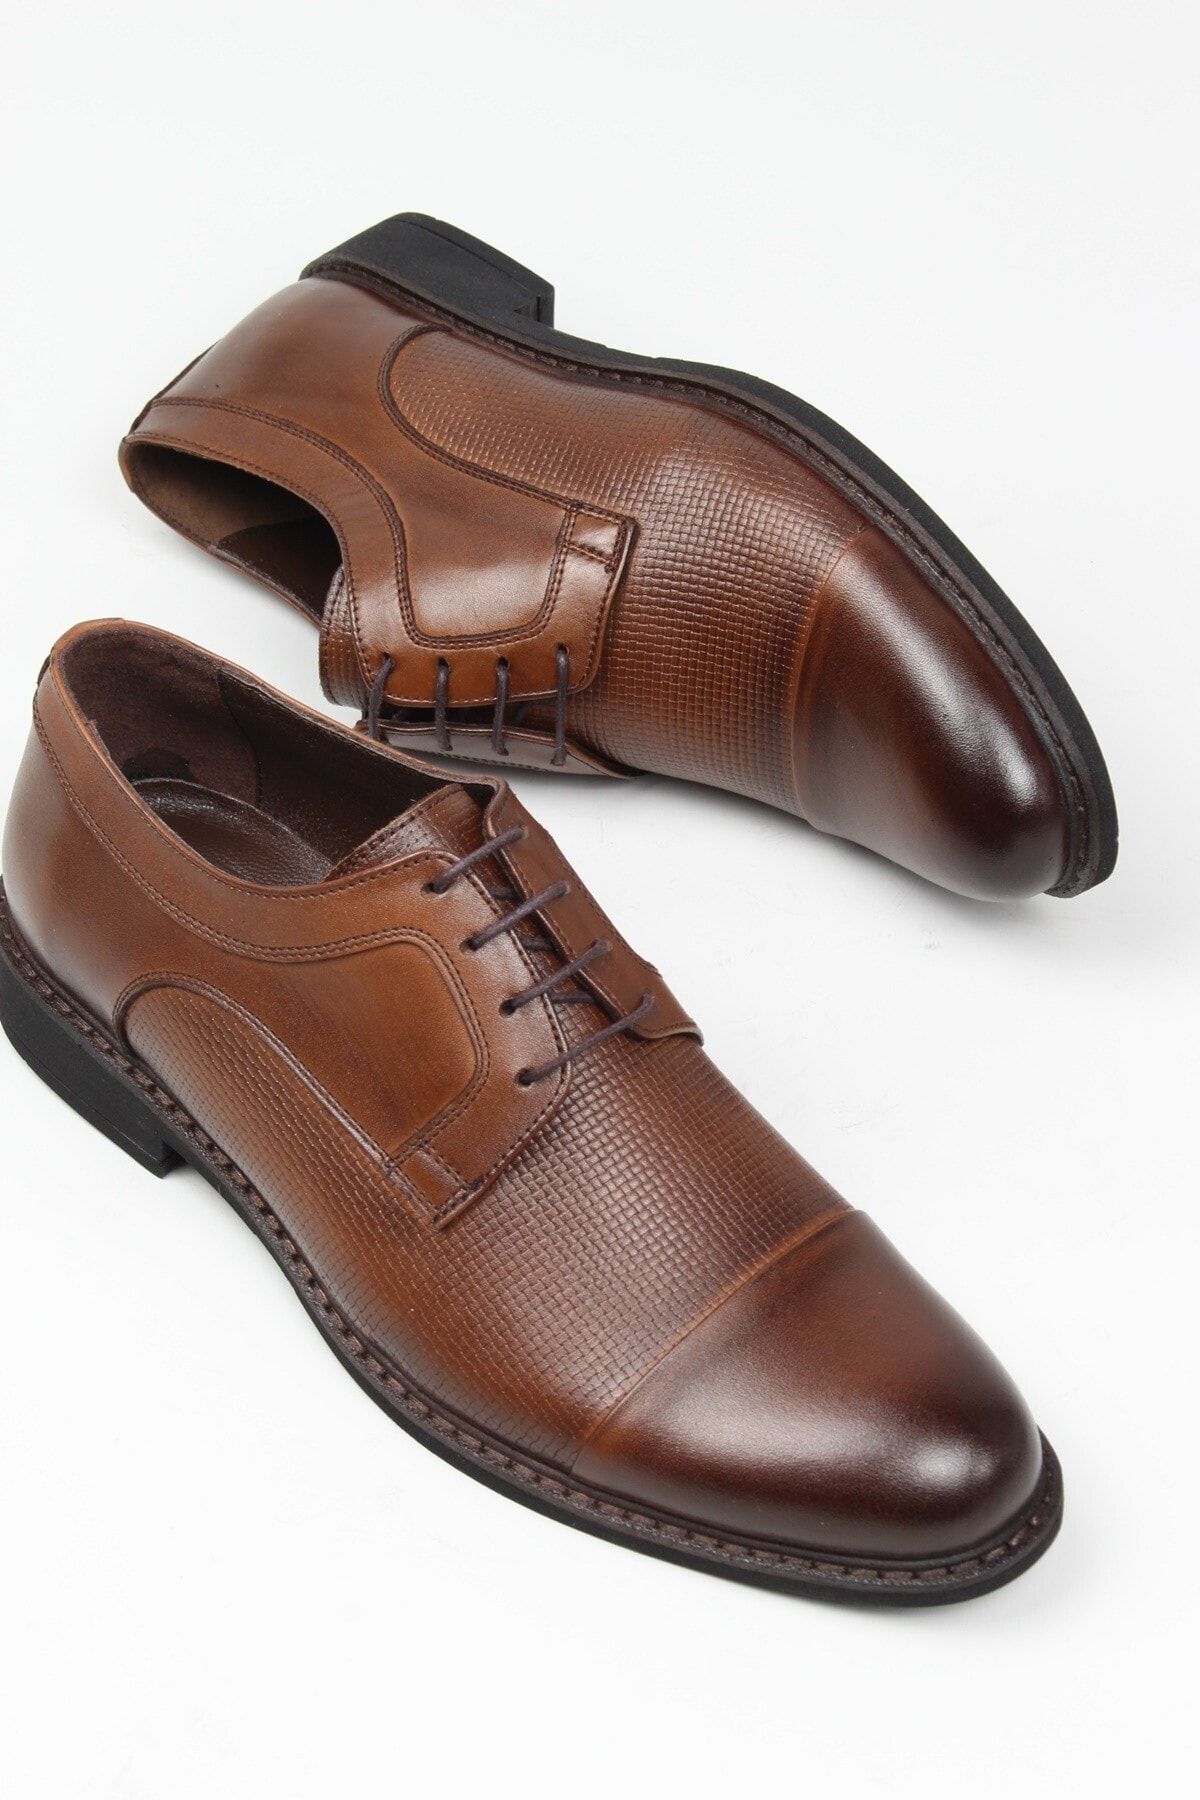 ayakPARK Hakiki Deri Günlük Klasik Rahat Erkek Ayakkabı